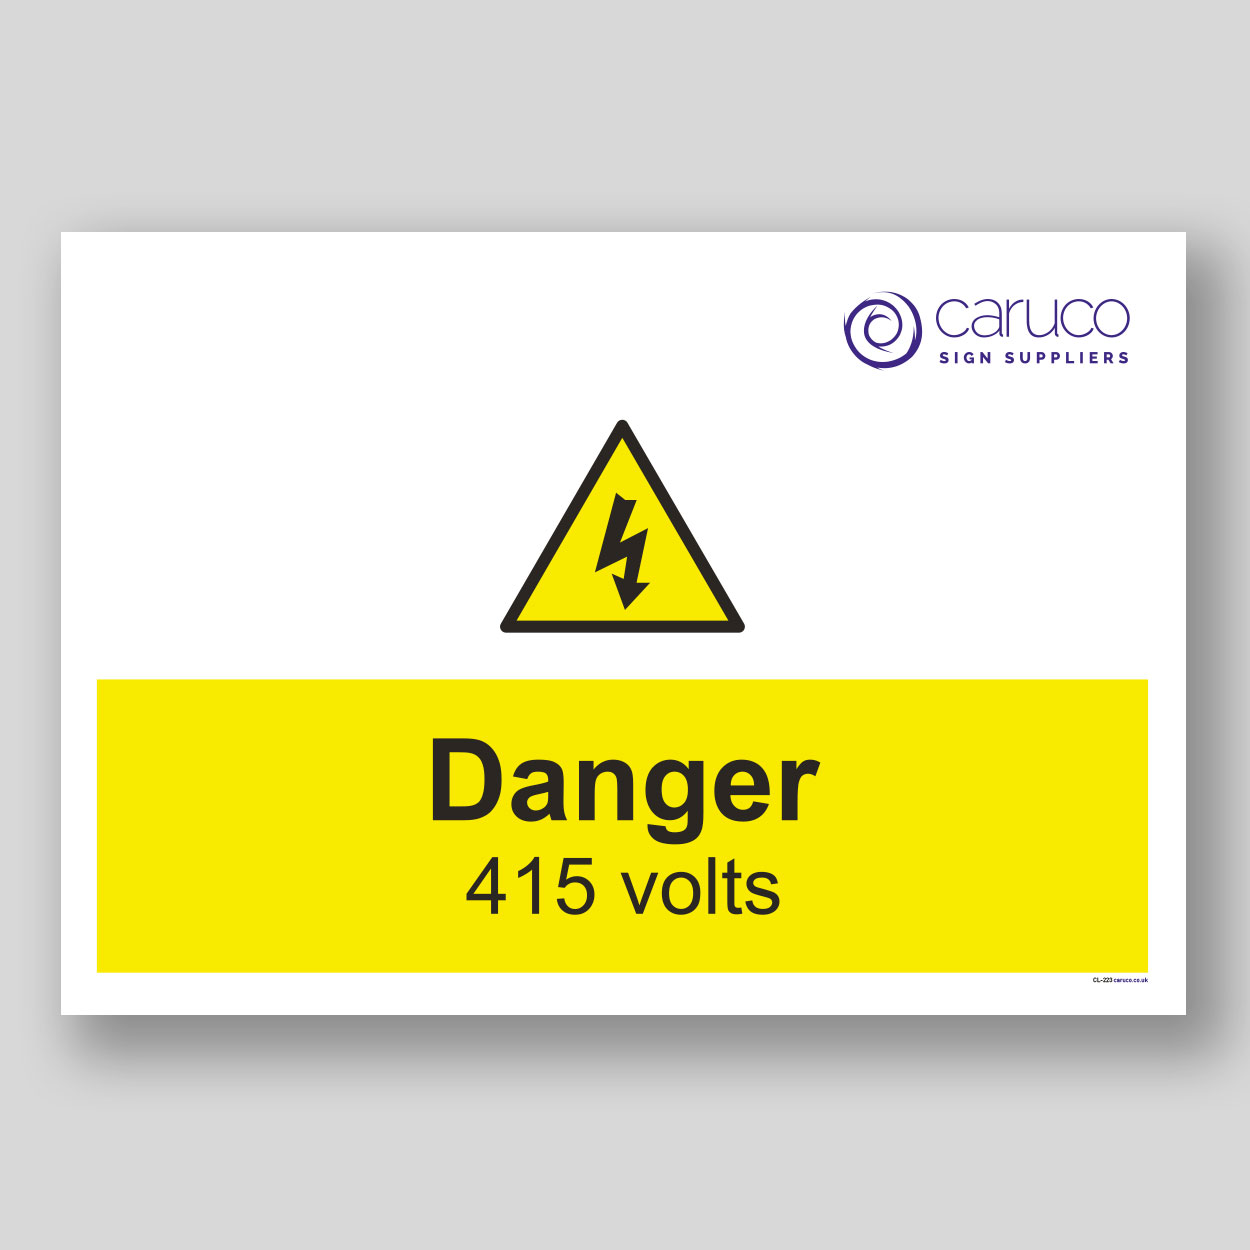 CL-223 Danger - 415 volts